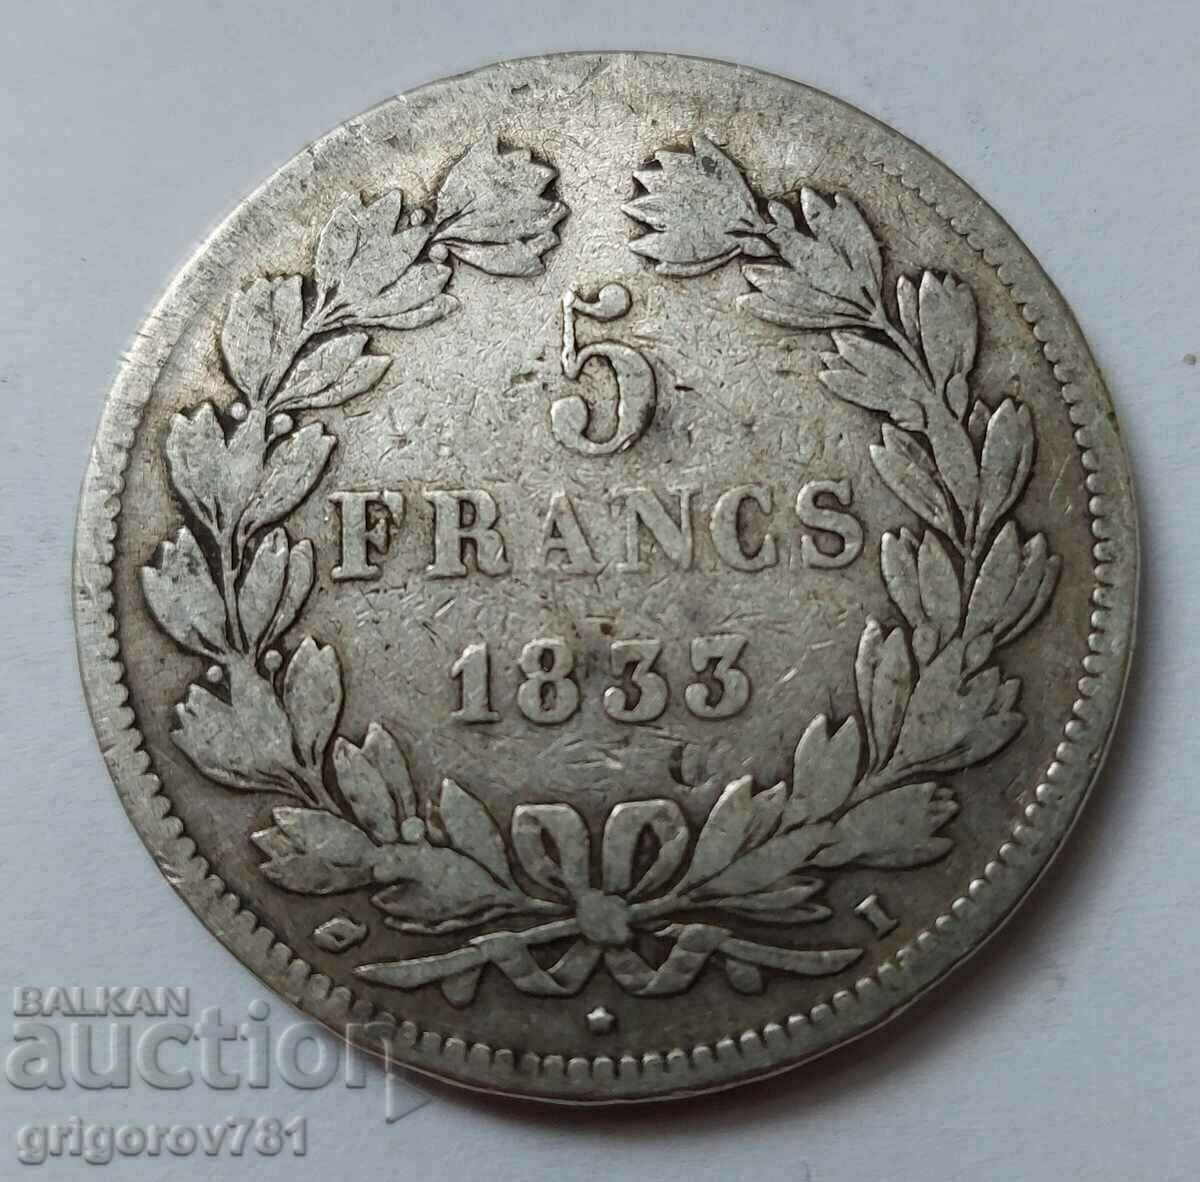 Ασημένιο 5 φράγκα Γαλλία 1833 I - ασημένιο νόμισμα # 36